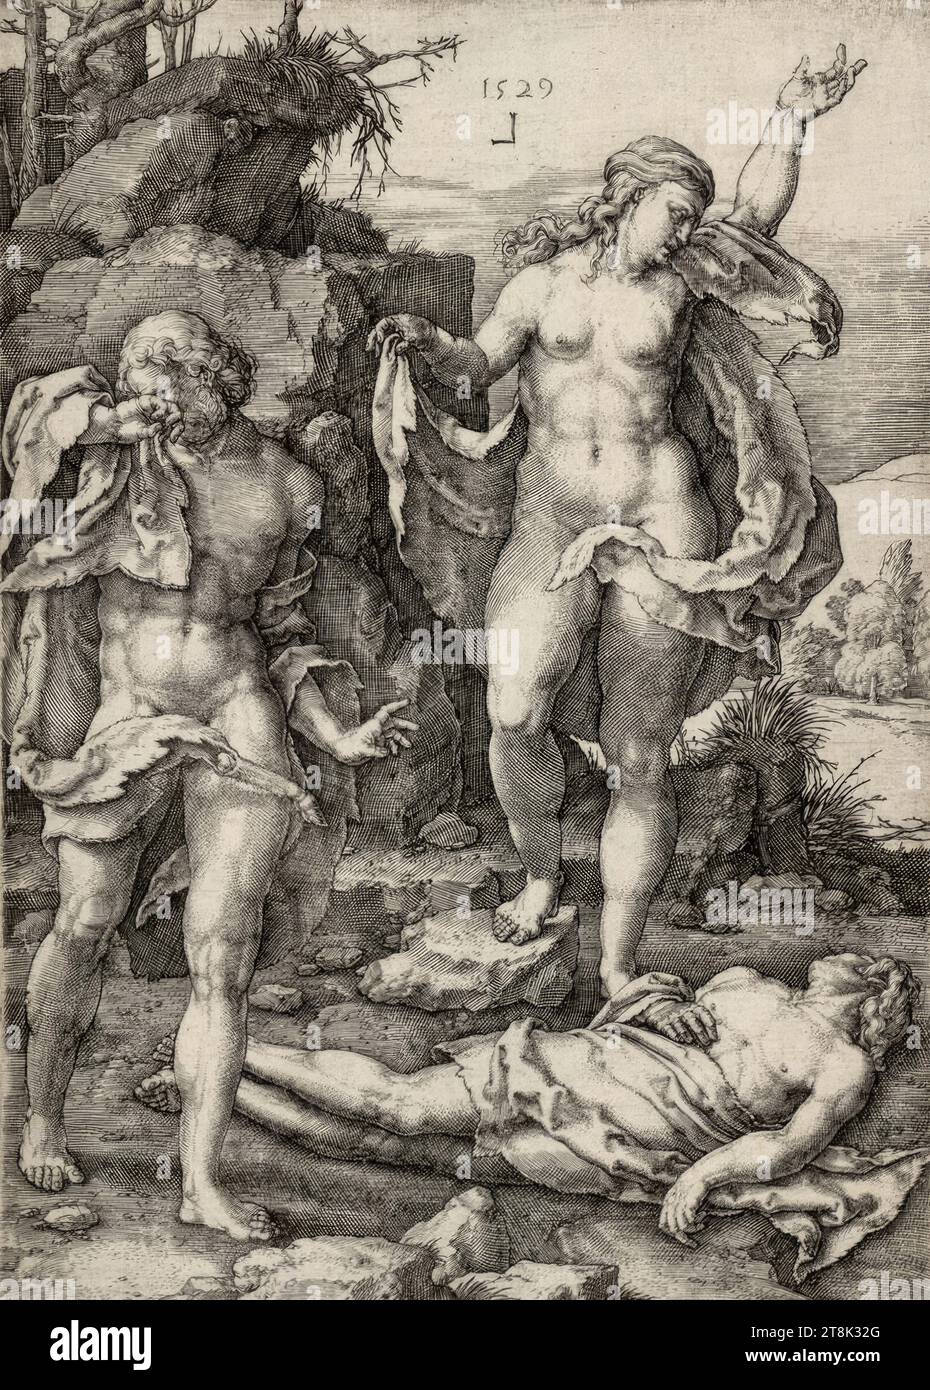 Adam et Eve pleurent Abel, Creation Story, Lucas Hugensz. Van Leyden, Leiden 1494 - 1533 Leiden, 1529, tirage, gravure sur cuivre, planche : 16,2 x 11,6 cm, selon New Hollstein Banque D'Images